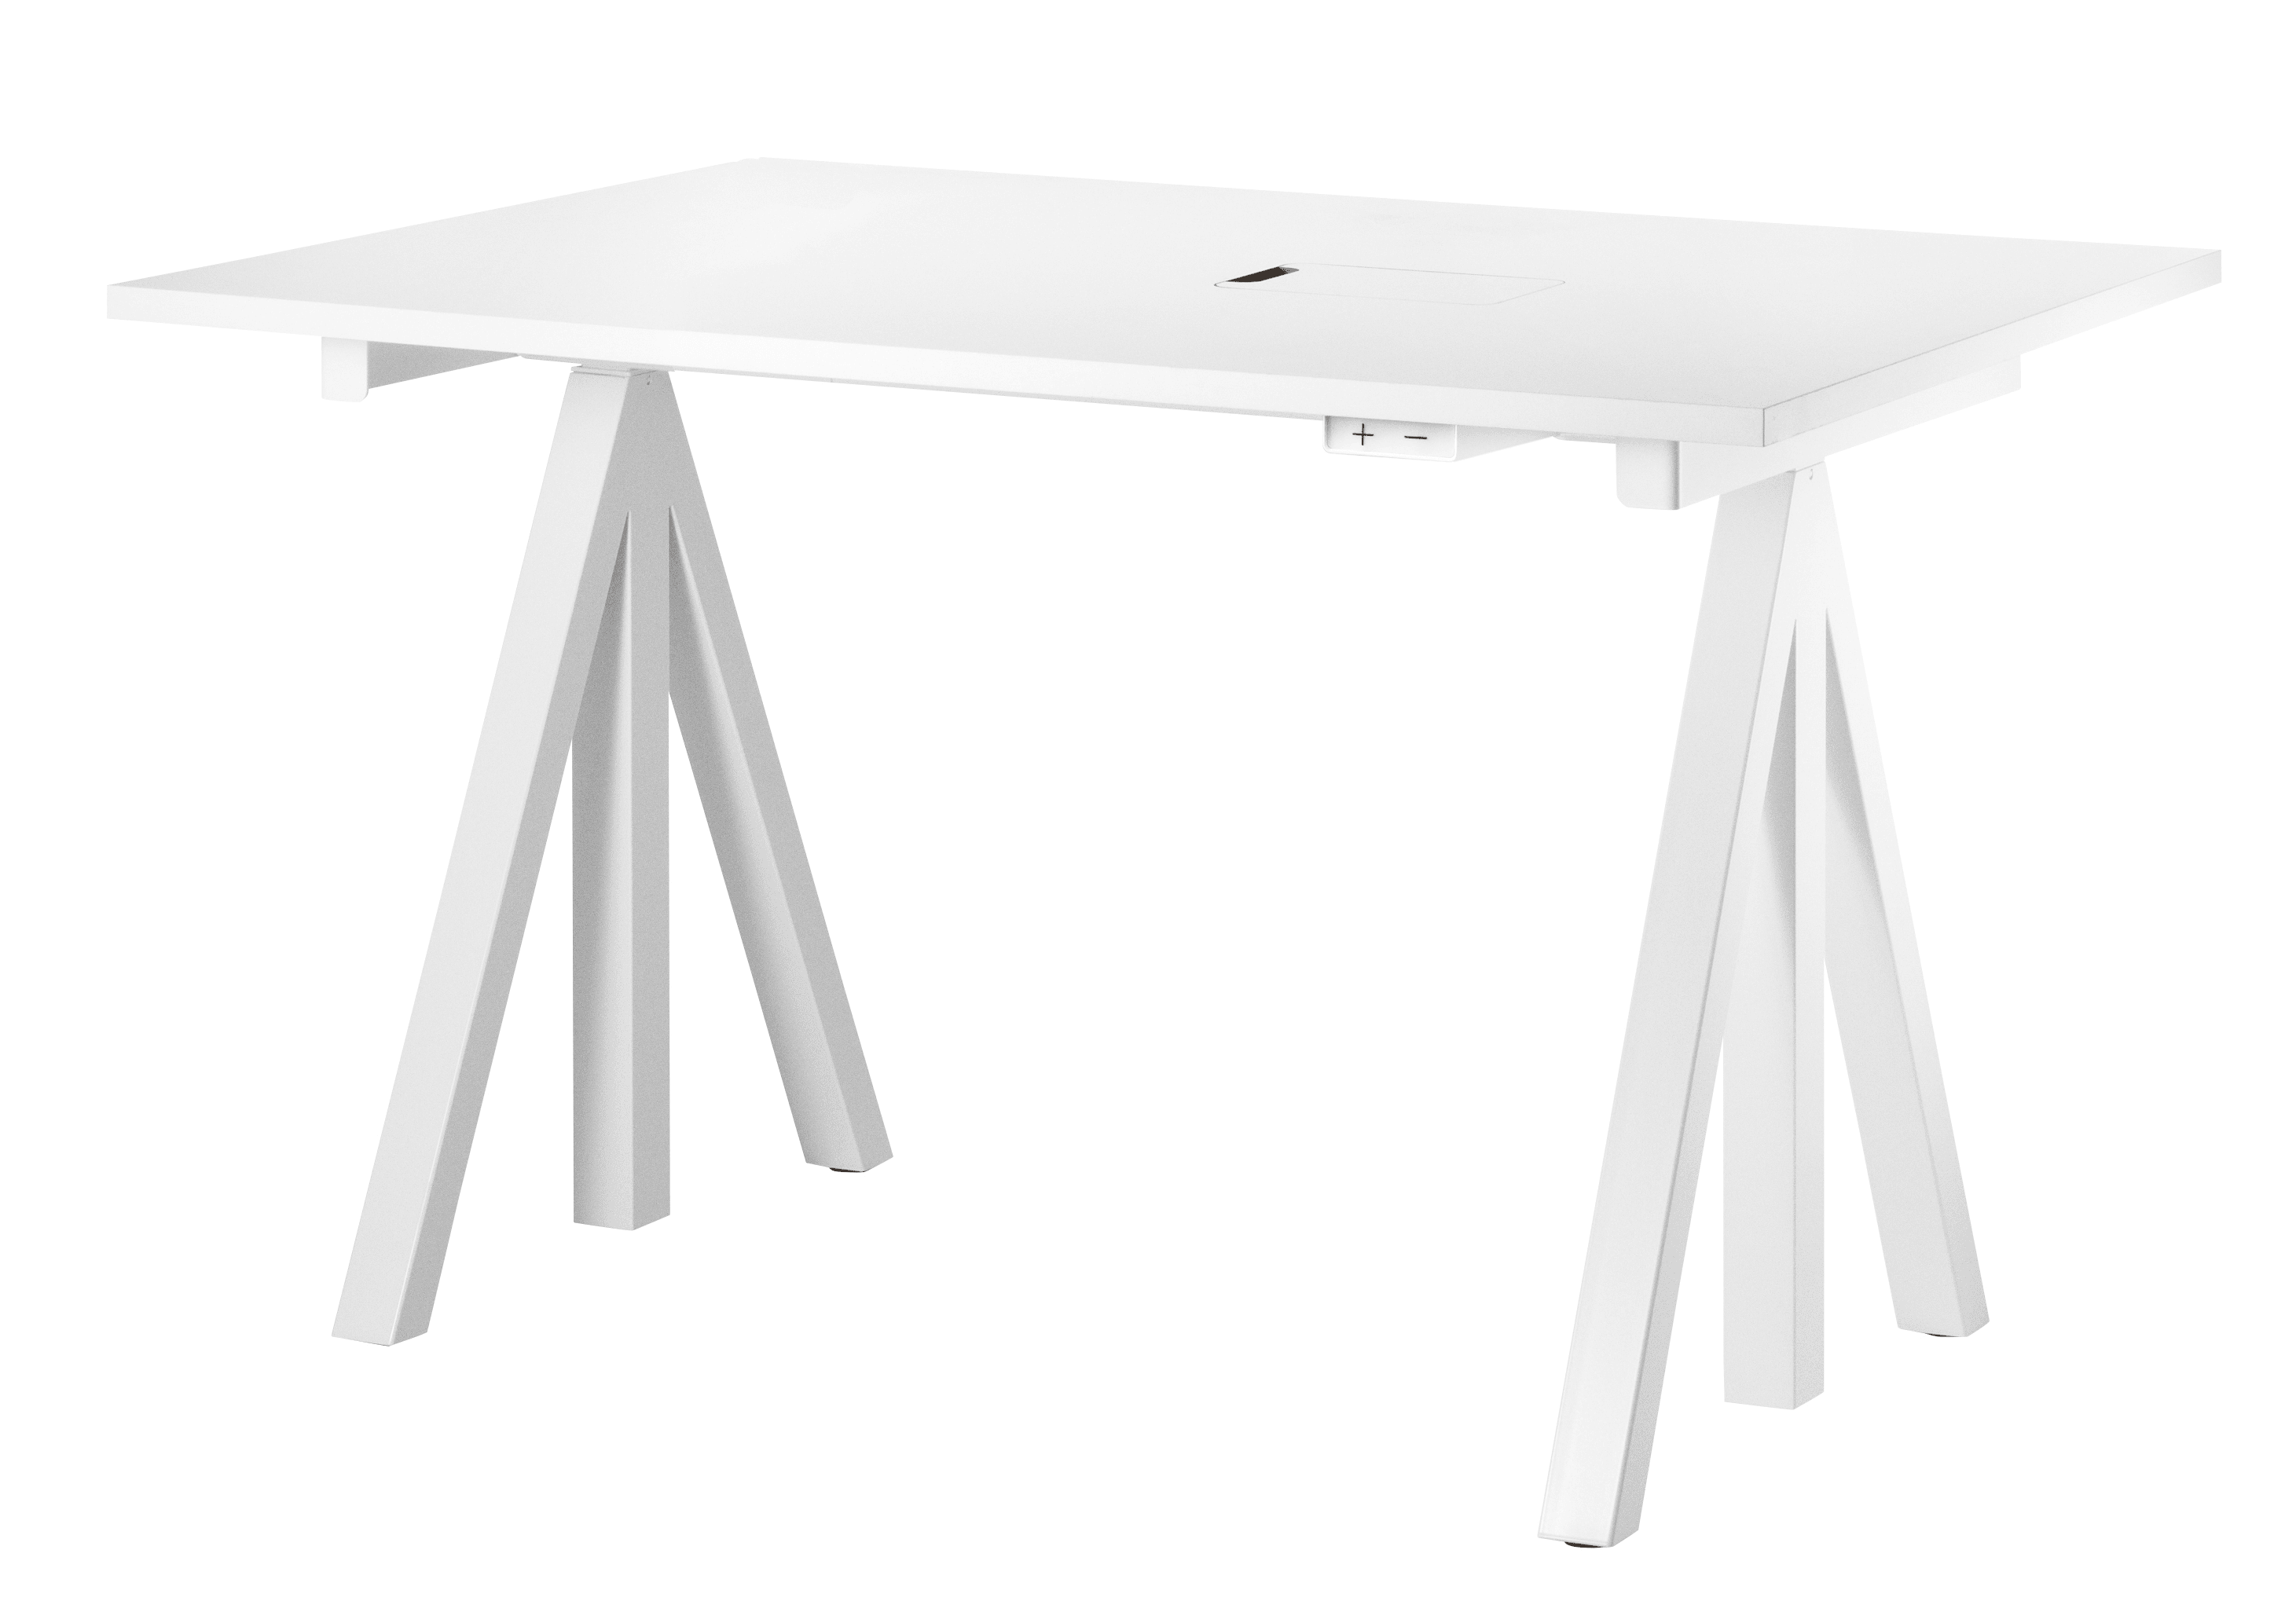 Höhenverstellbare Schreibtischplatte, elektrisch, weiß, 120x78 cm, höchste Position